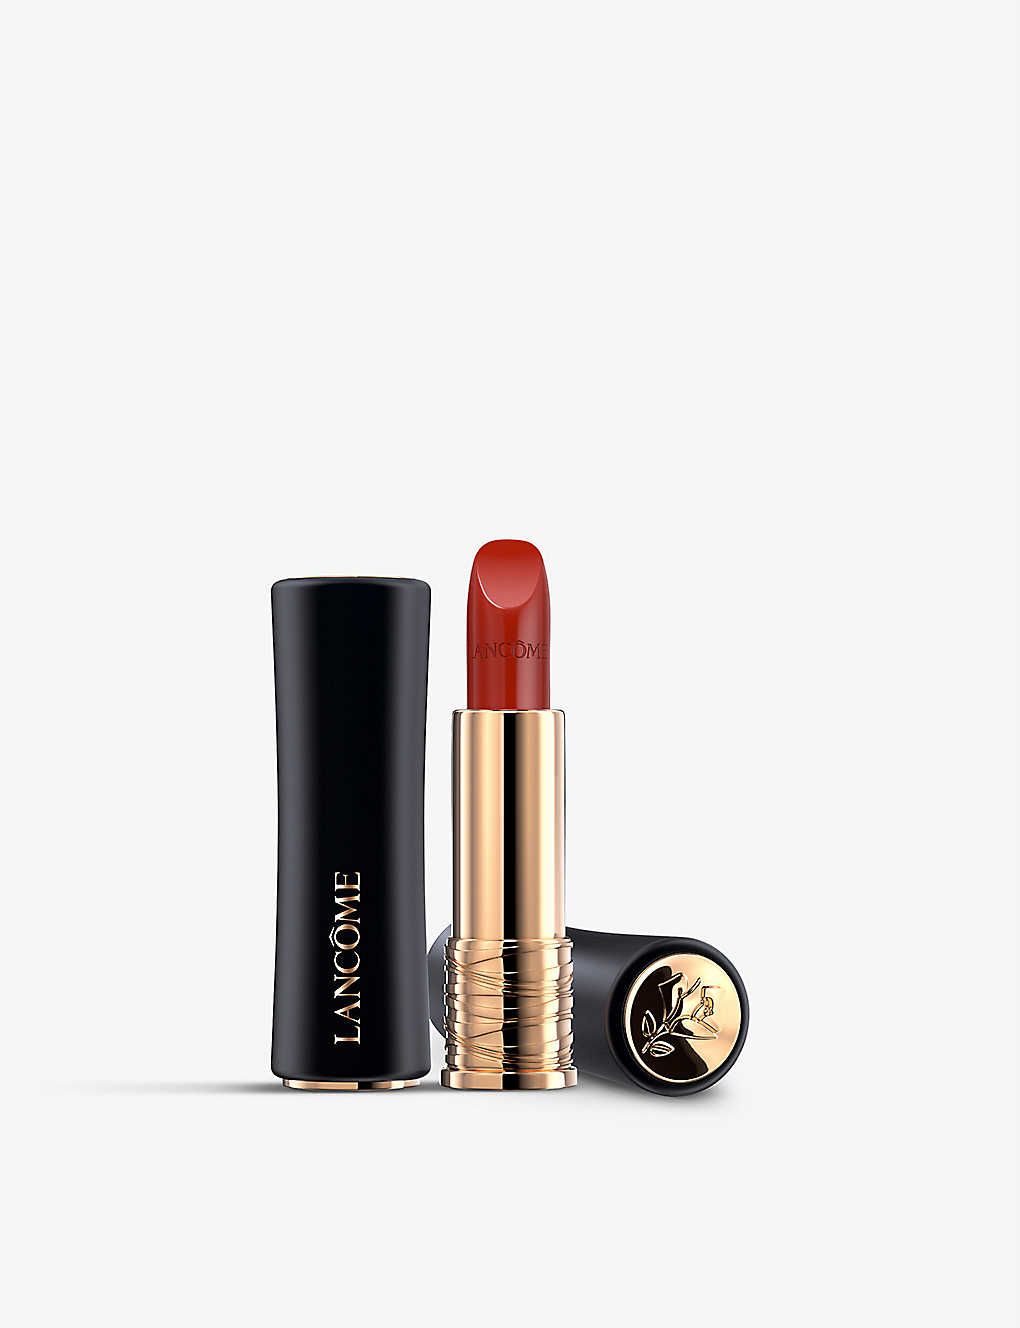 Lancôme L'absolu Rouge Cream Lipstick 3.4g In 196